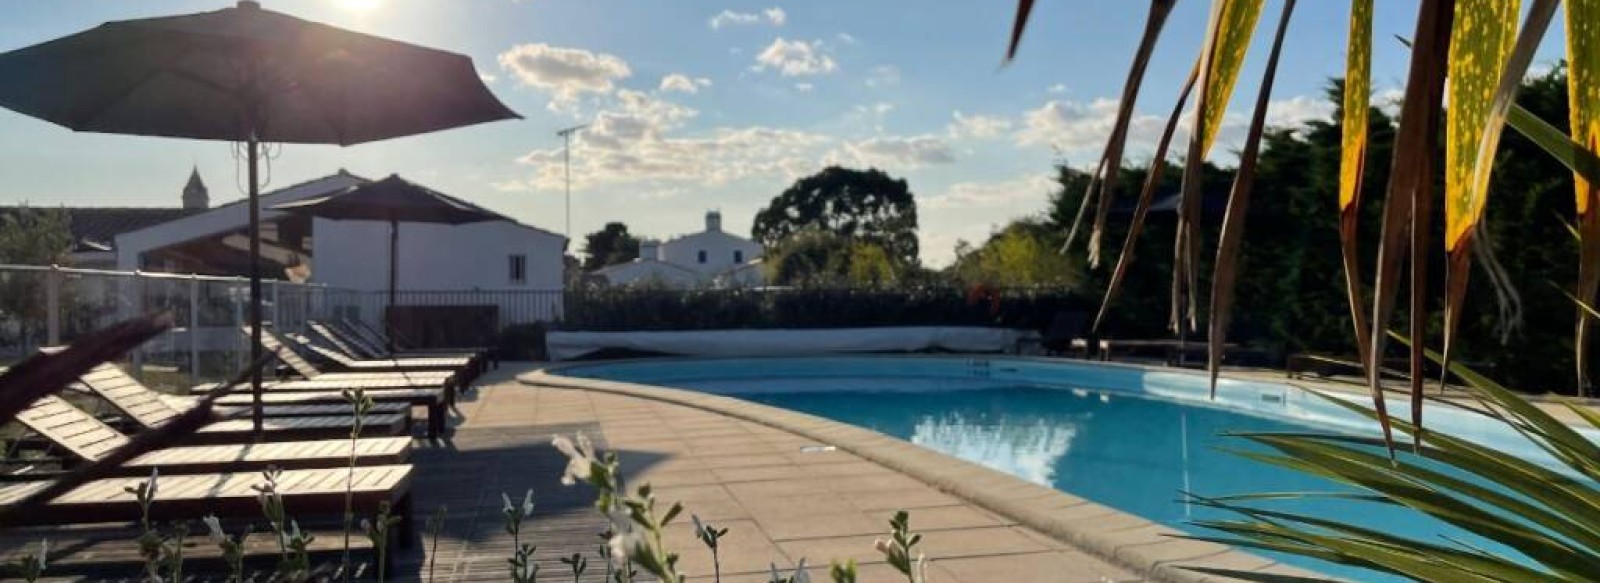 Maison de vacances dans residence avec piscine chauffee a proximite du centre-ville de Noirmoutier en l'ile